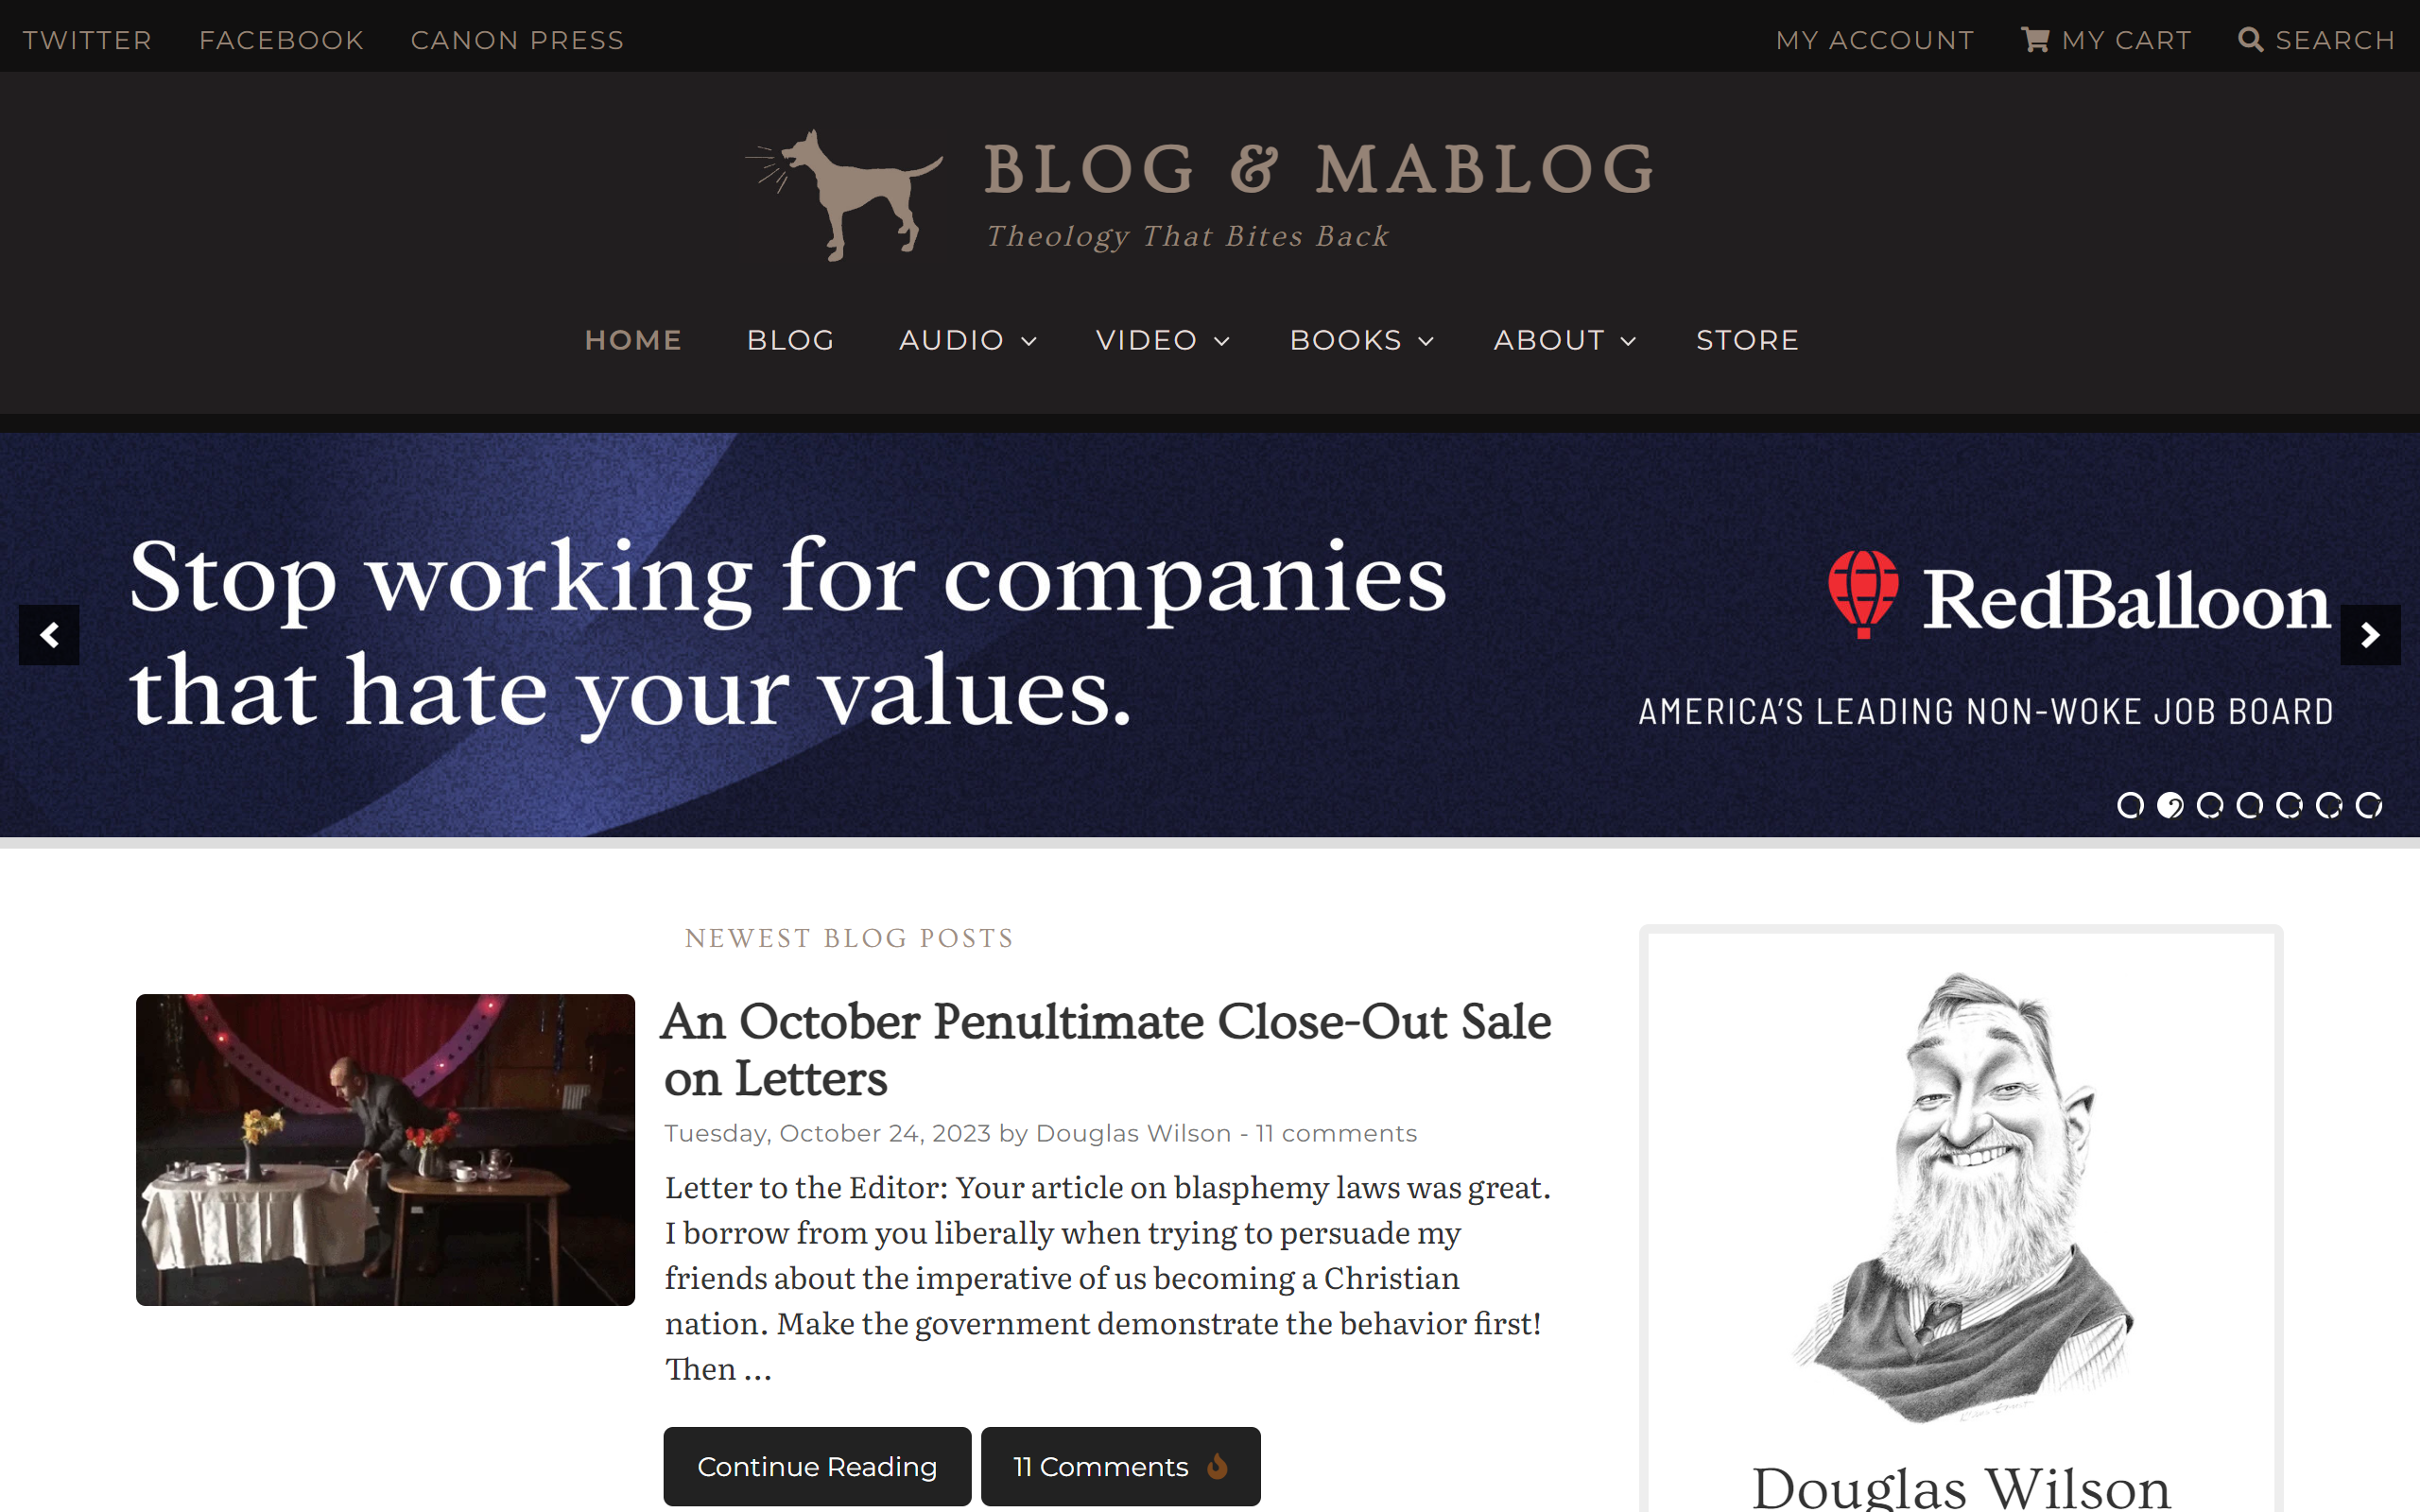 Blog & Mablog Christian Blog